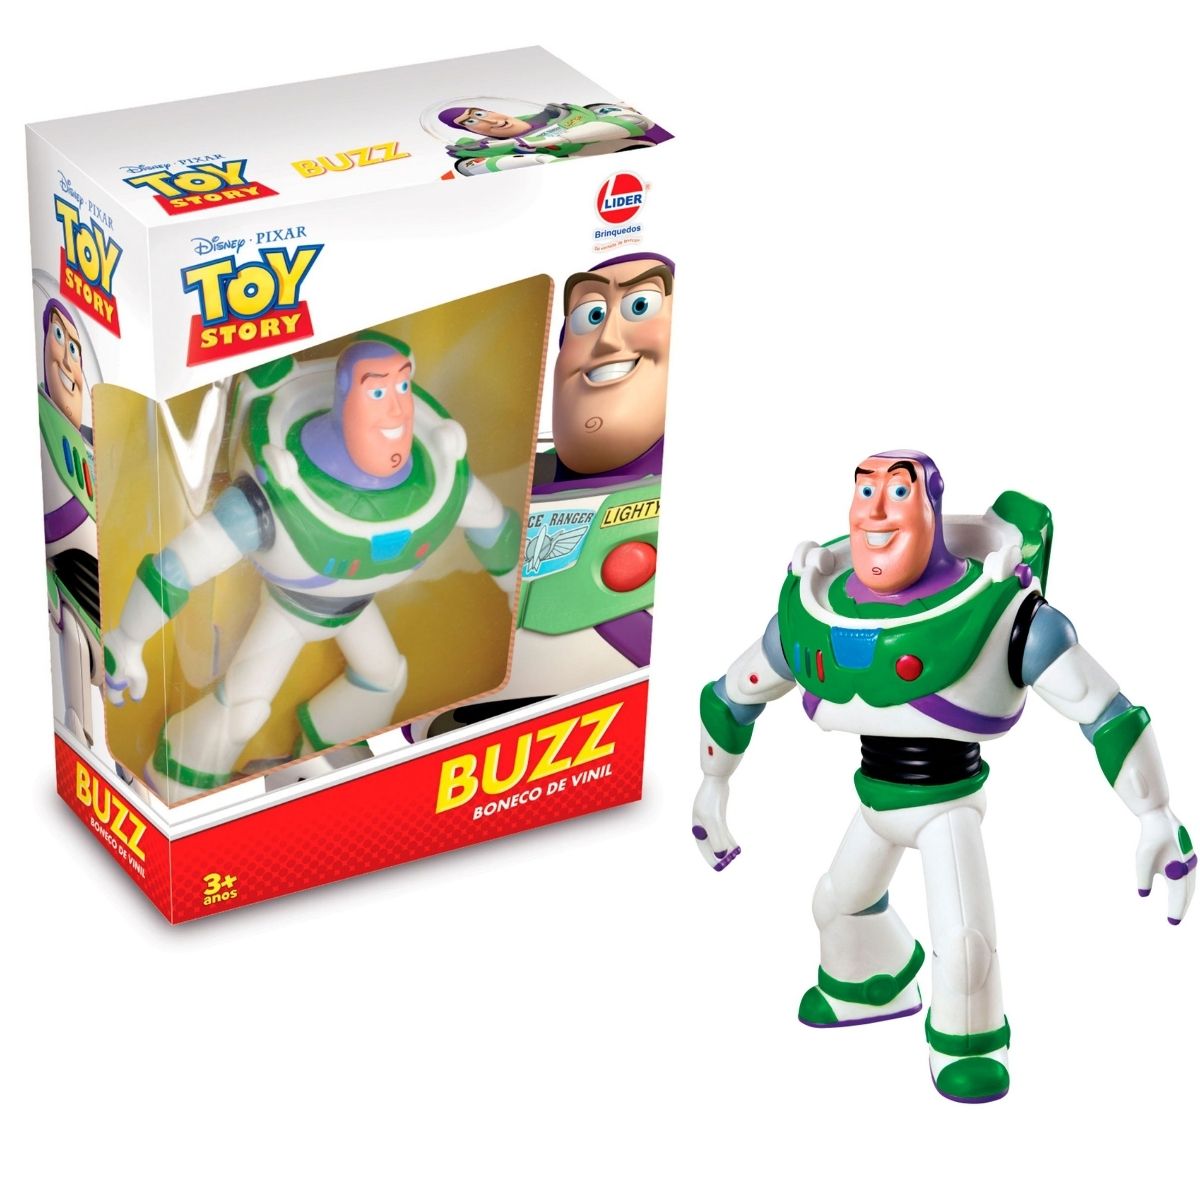 Boneco de Vinil Buzz Lightyear Toy Story Articulado